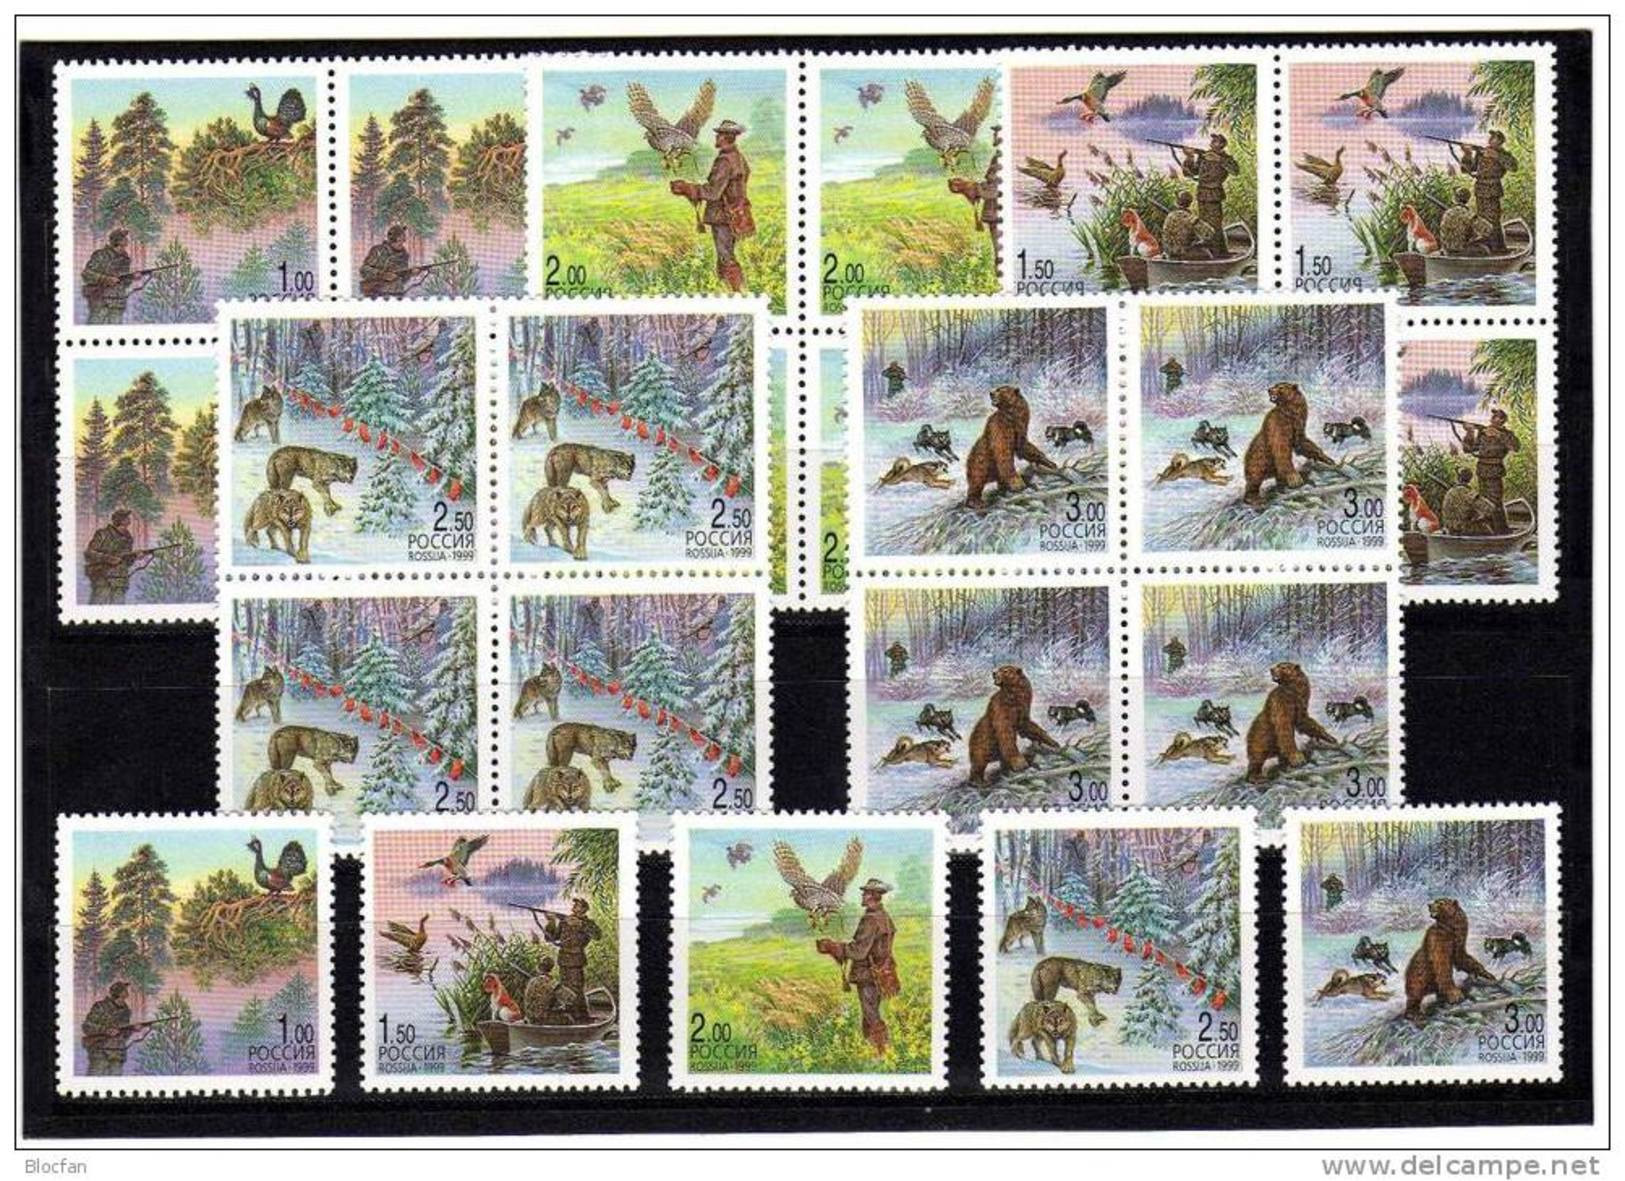 Jagd 1999 Wildpflege Rußland 699/3+5x4-Block ** 12€ Naturschutz Auerhahn Bär Wolf Ente WWF Hoja Bloc Sheets Ss Bf Russia - Unused Stamps